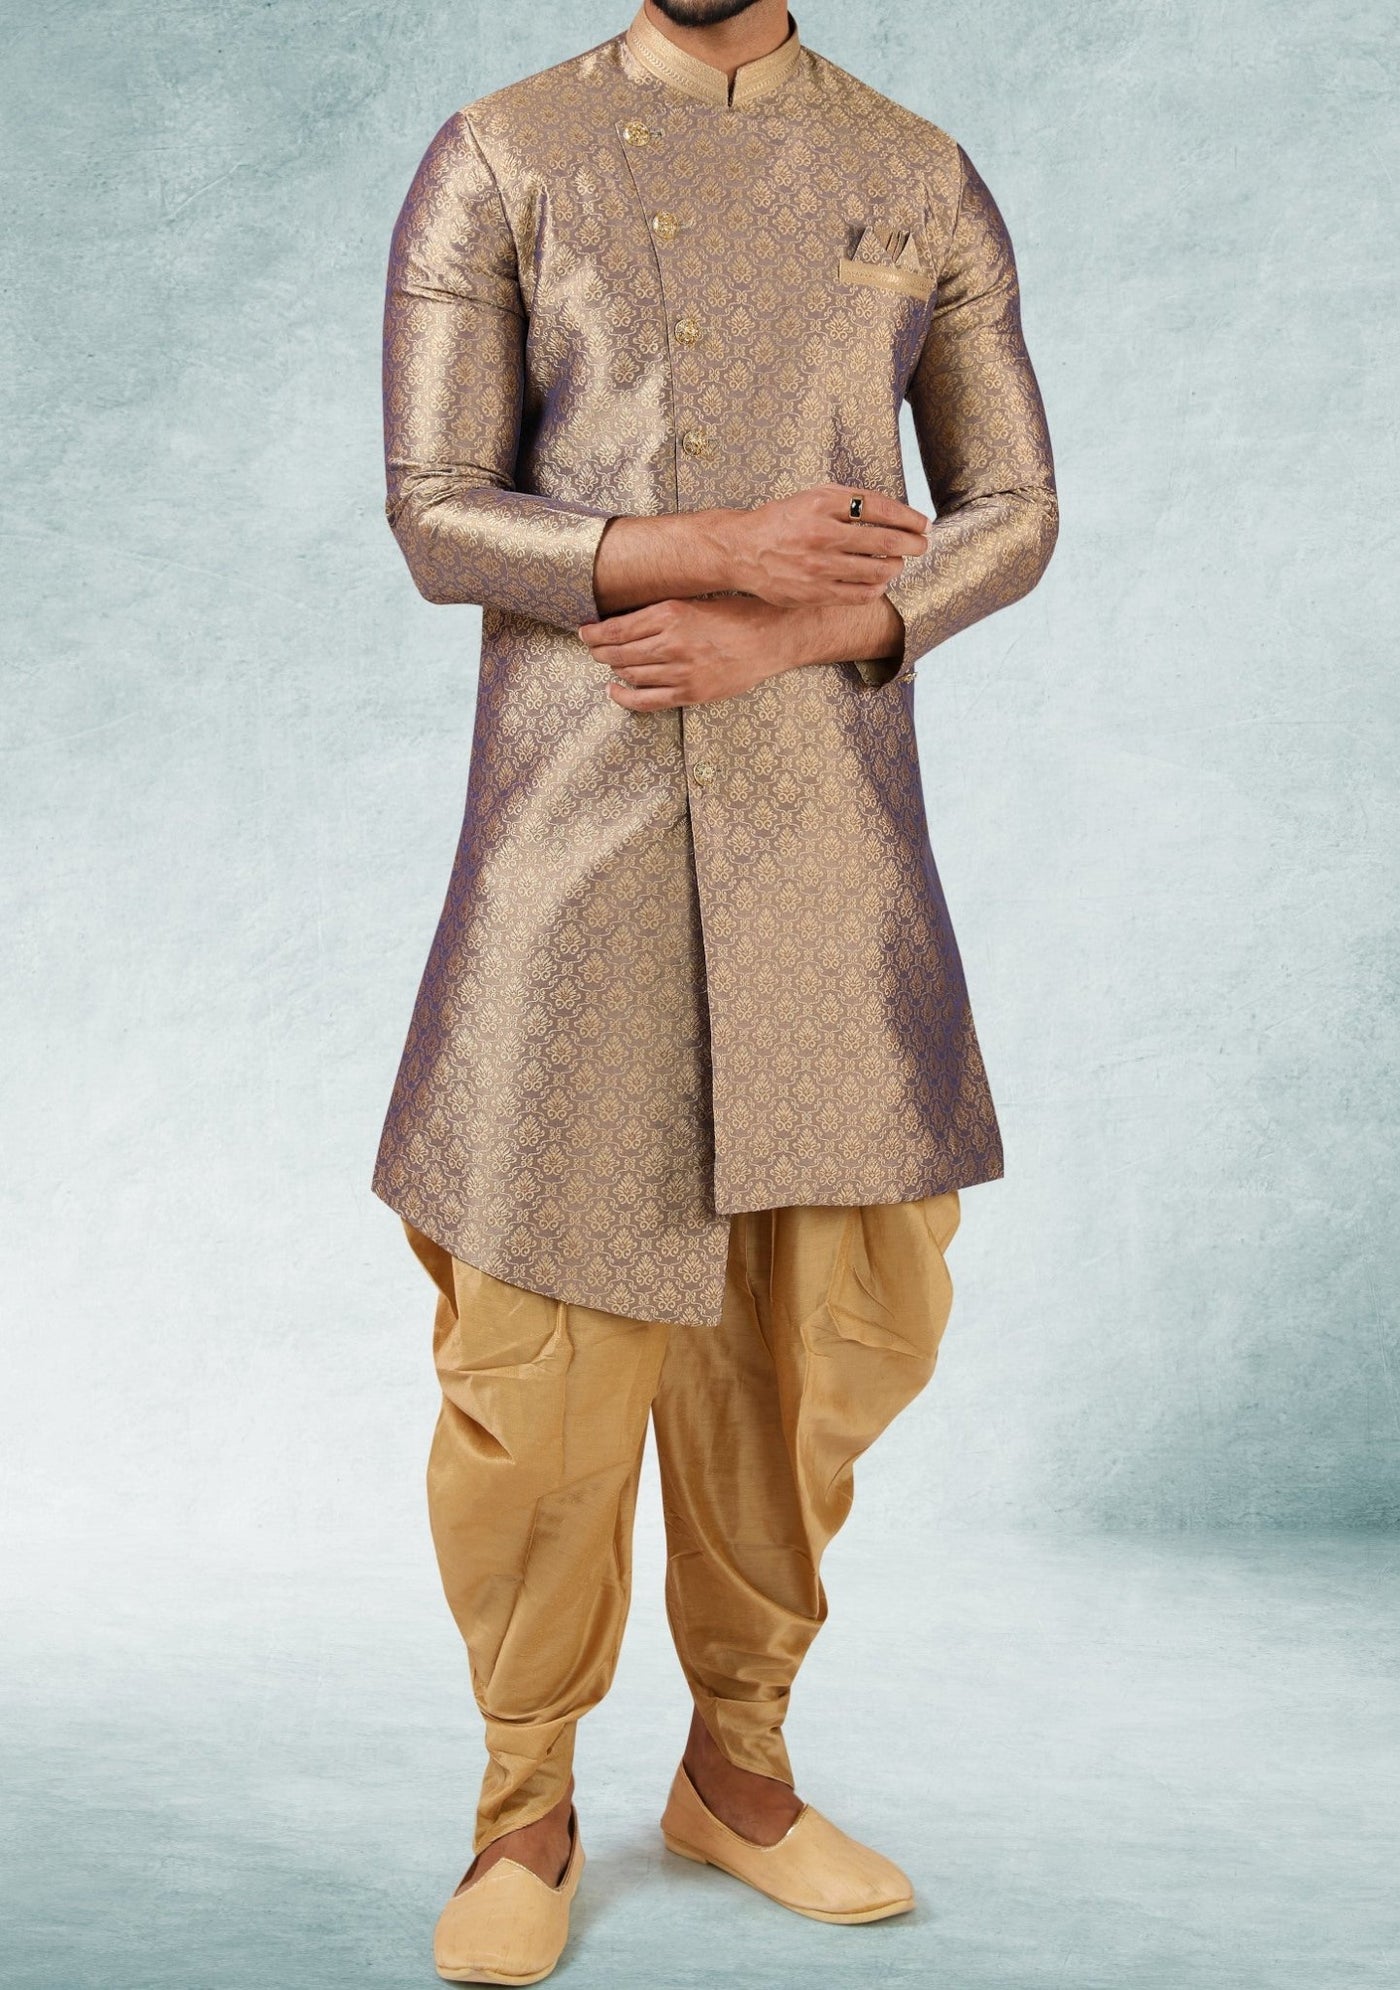 Men's Indo Western Party Wear Sherwani Suit - db20669